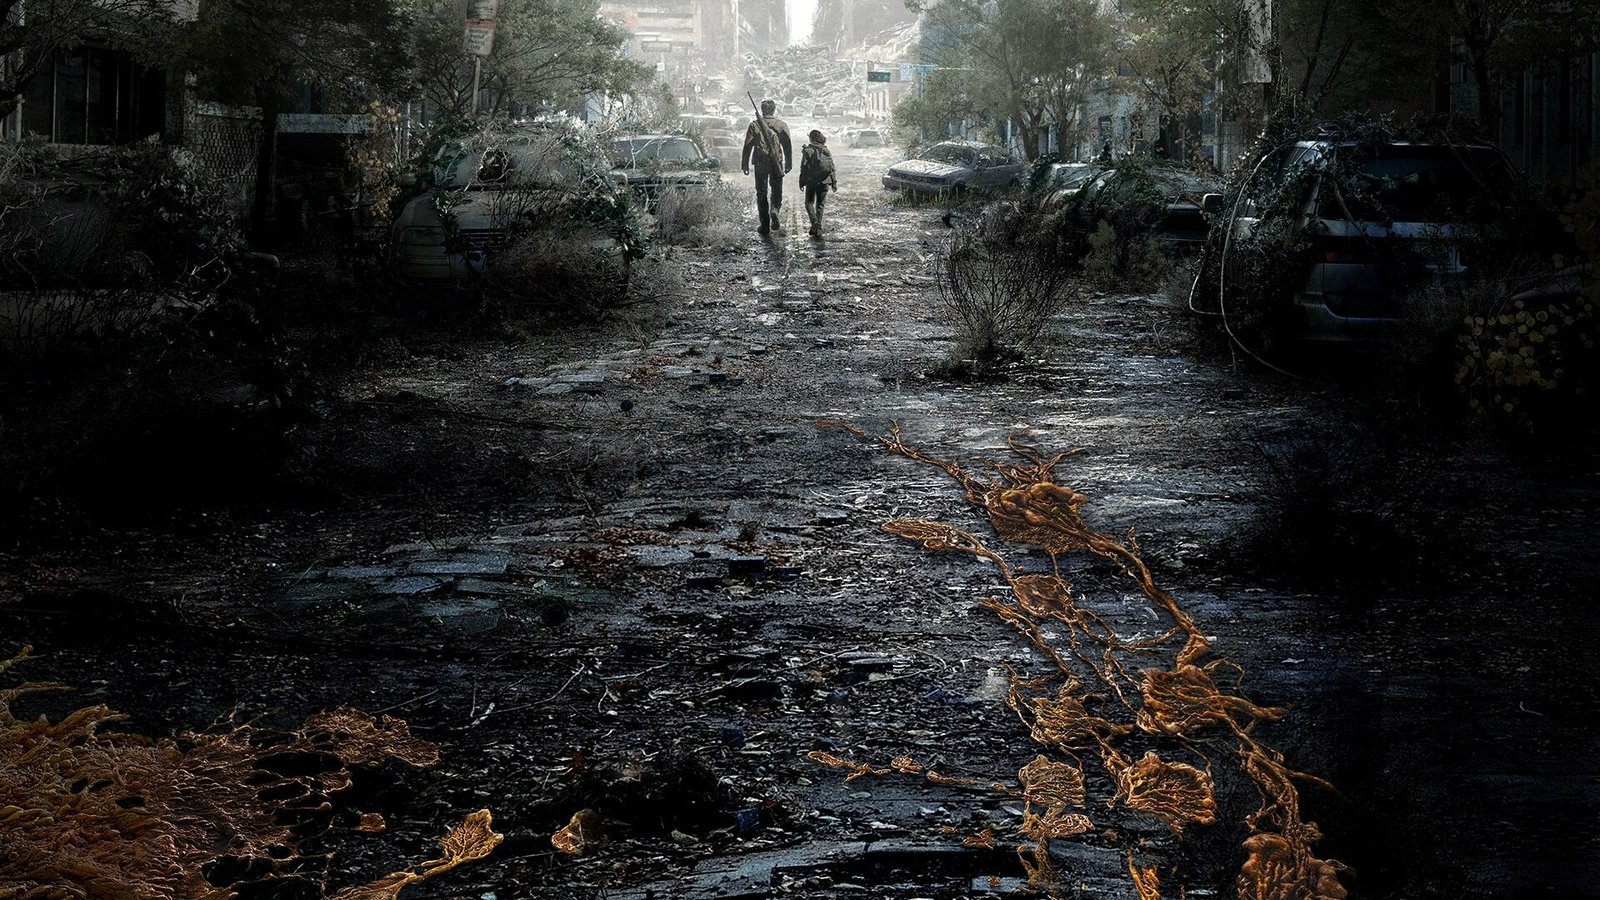 Одни из нас / The Last of Us